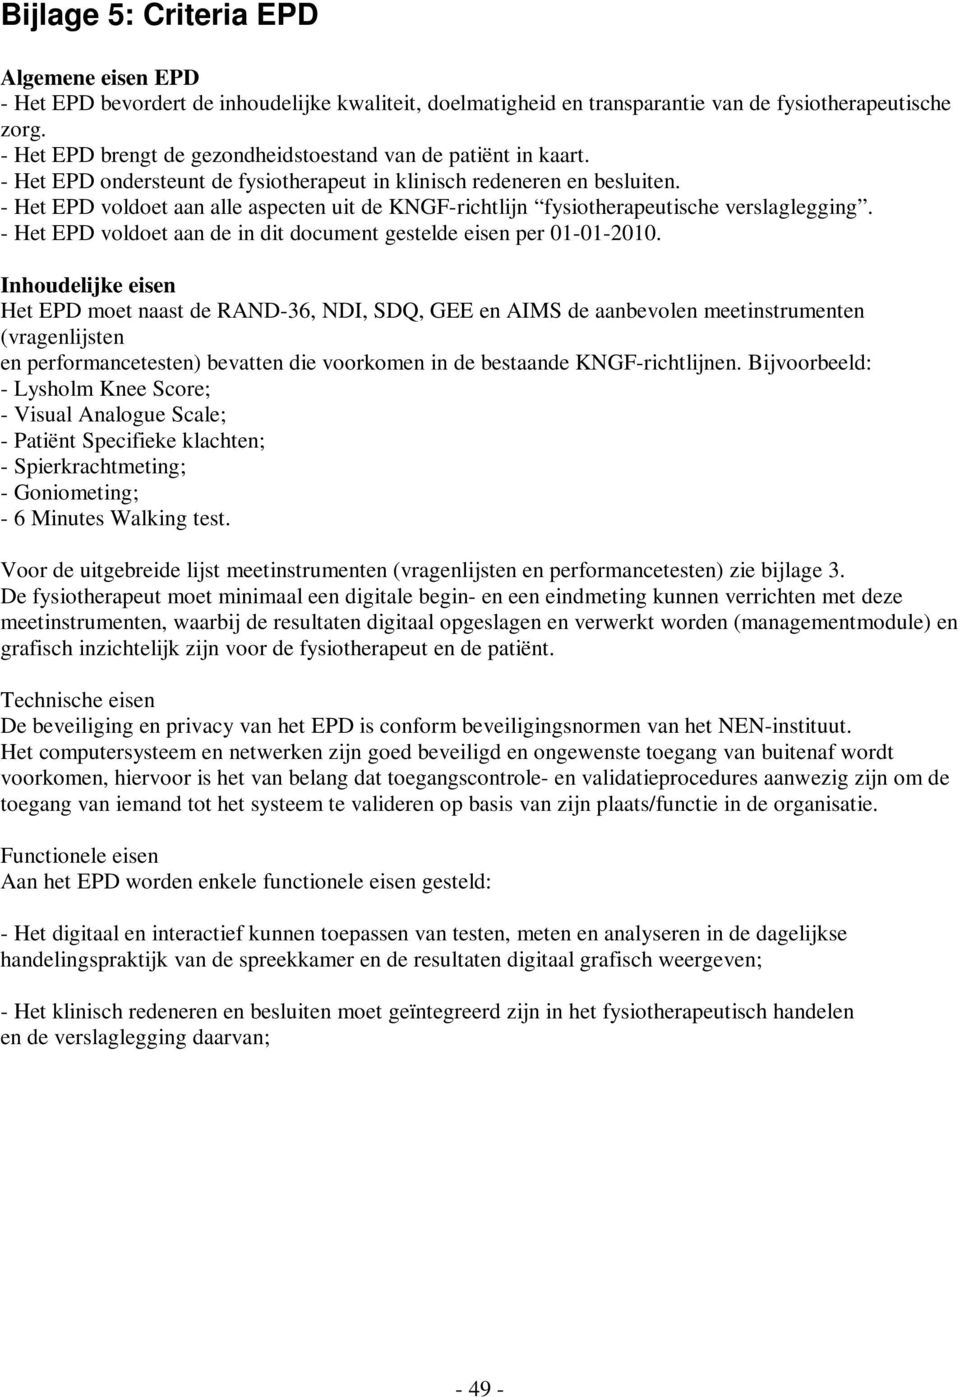 - Het EPD voldoet aan alle aspecten uit de KNGF-richtlijn fysiotherapeutische verslaglegging. - Het EPD voldoet aan de in dit document gestelde eisen per 01-01-2010.